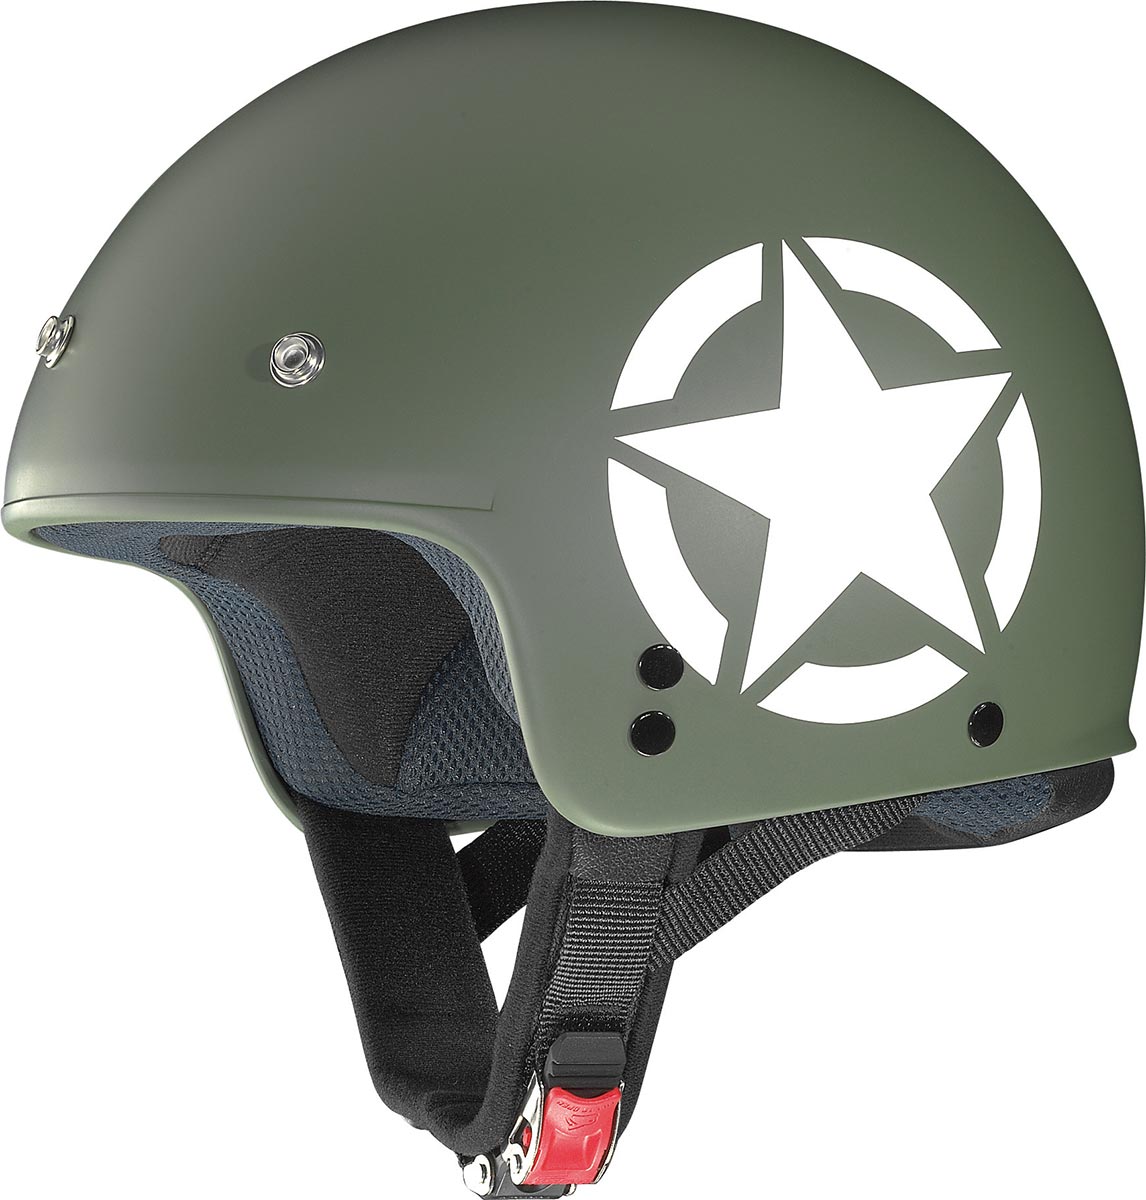 Le casque Grex G2.1 Army est un casque demi-jet au look militaire